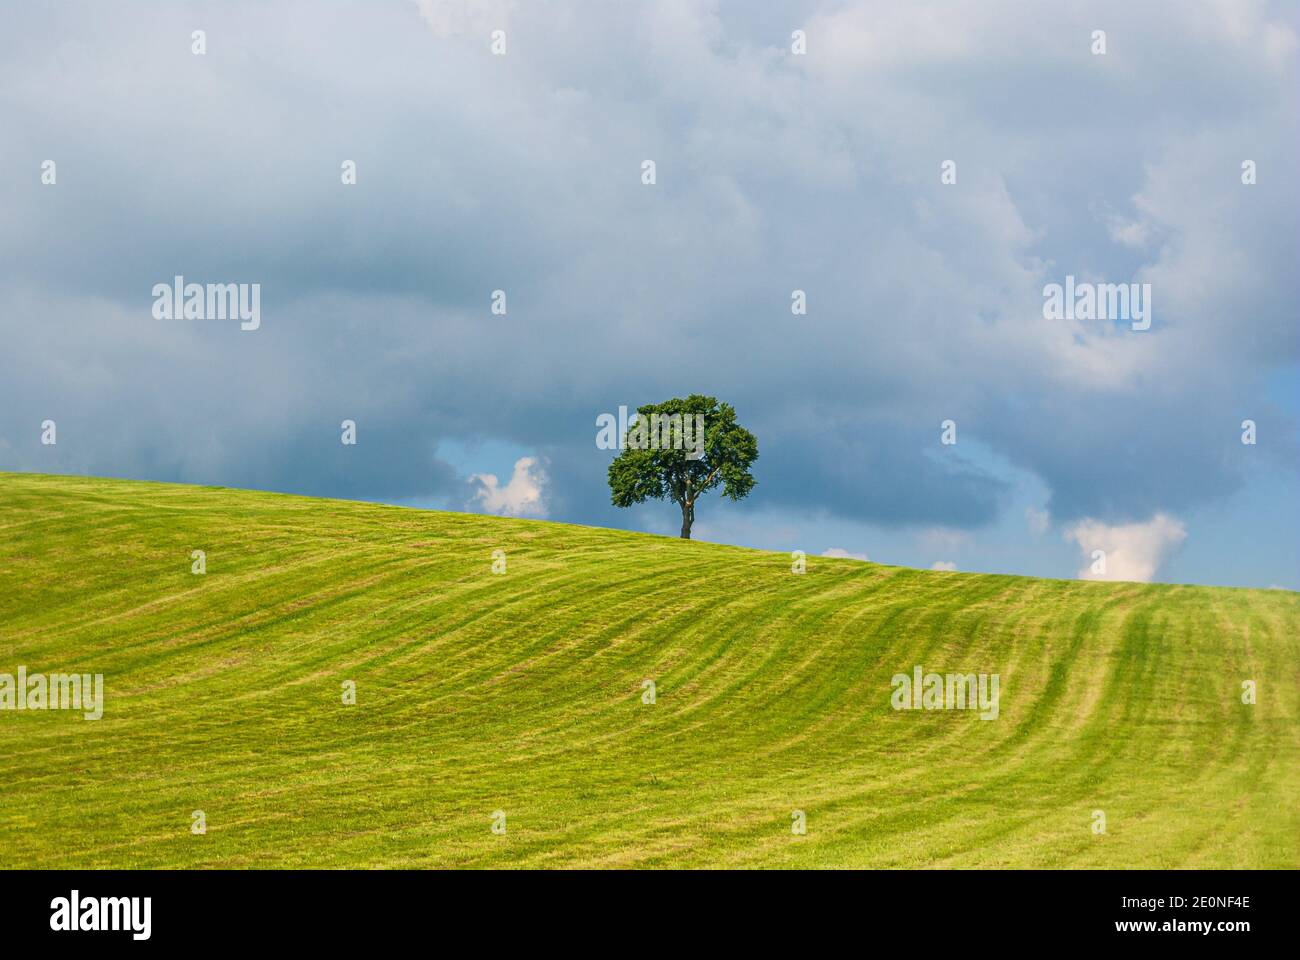 Einzelbaum auf einem Hügel in einer ländlichen Gegend im Sommer in Gewitteratmosphäre. Stockfoto